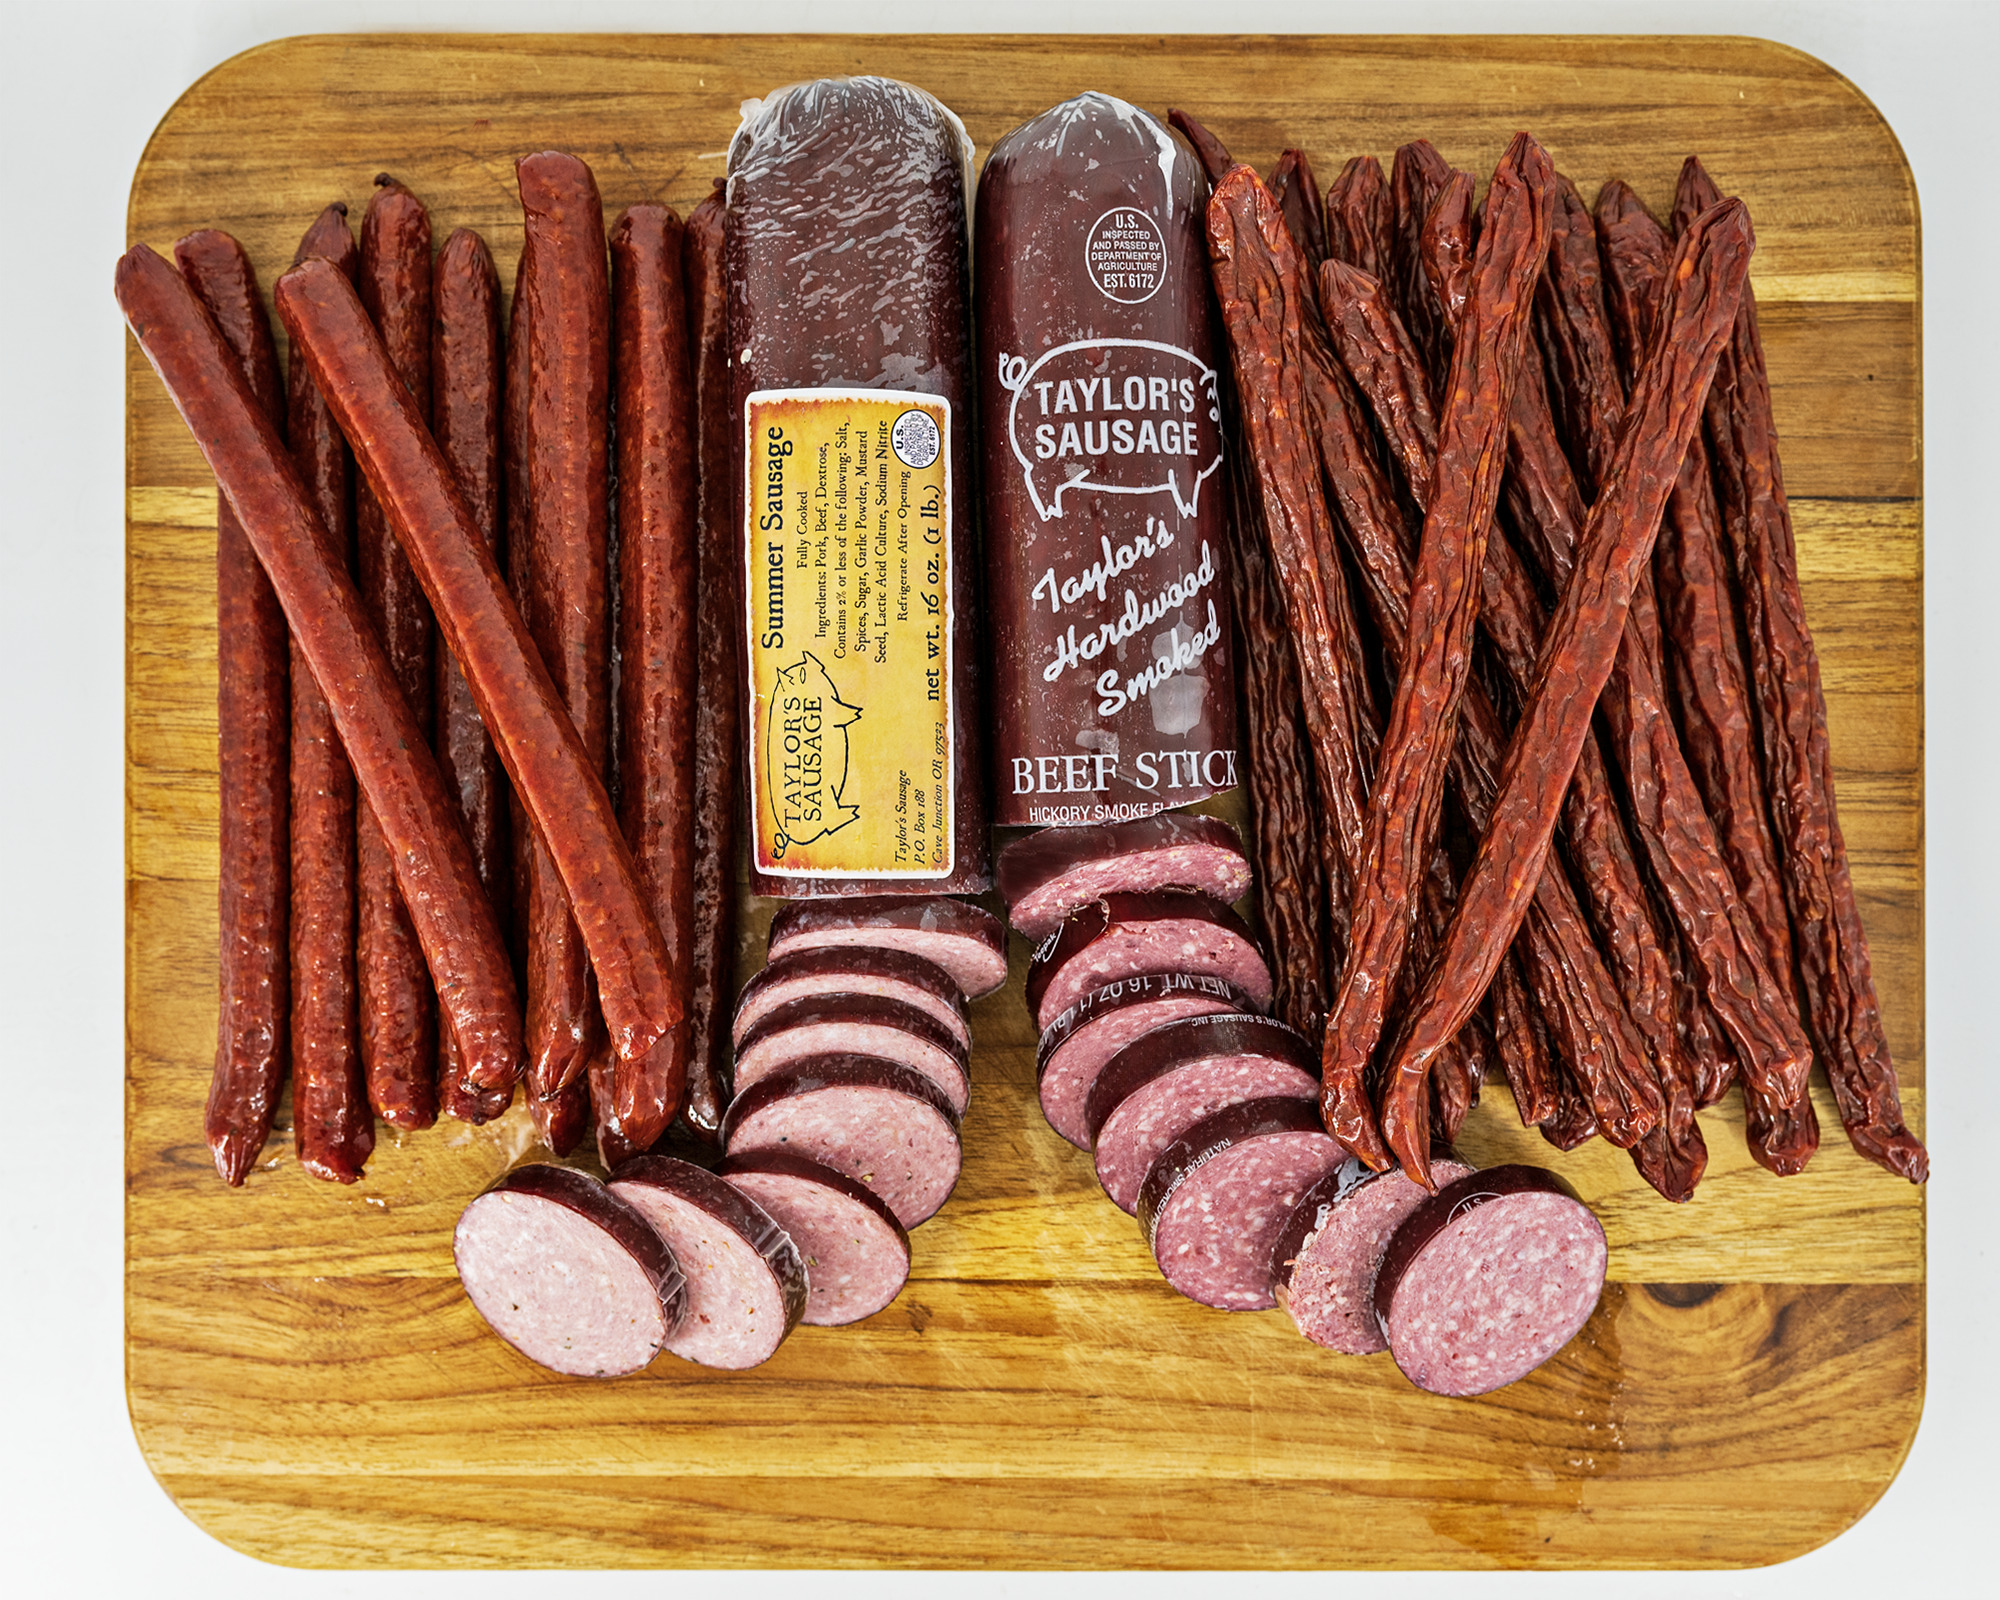 1 Pound Mini Beef Sticks, Sticks & Summer Sausage